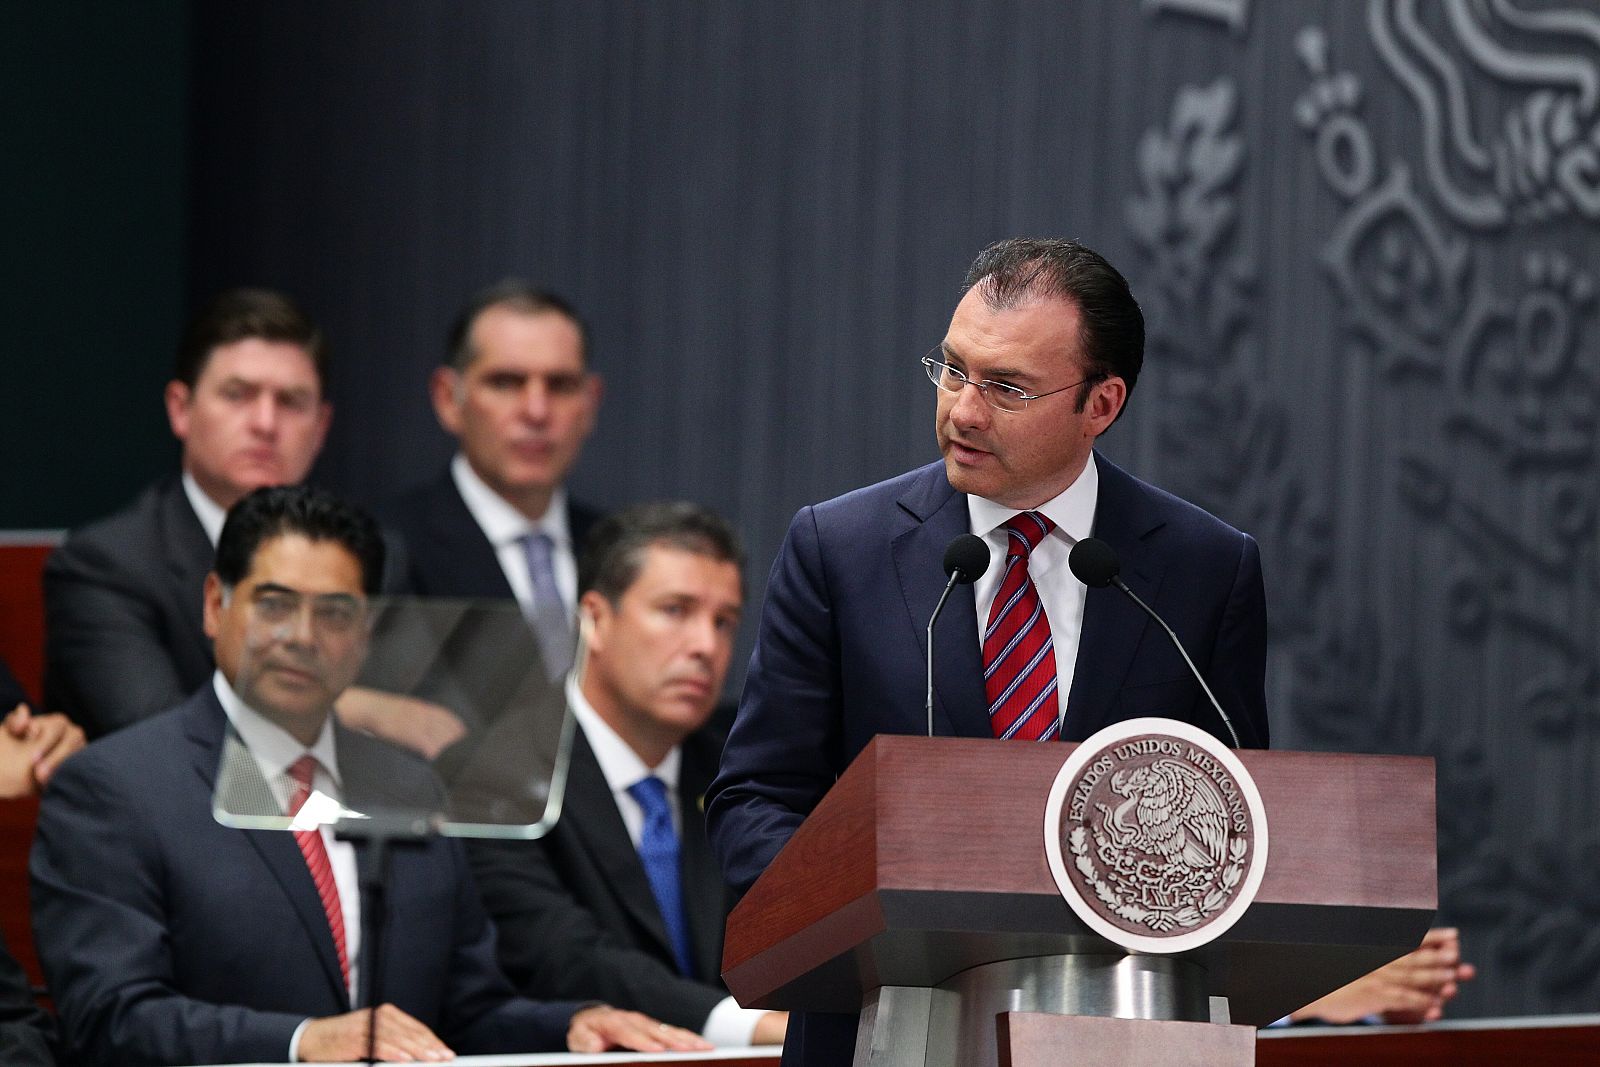 El secretario de Hacienda mexicano, Luis Videgaray, comparece en la Cámara de Diputados para explicar a los legisladores la polémica reforma fiscal anunciada el pasado domingo por el presidente Enrique Peña Nieto.